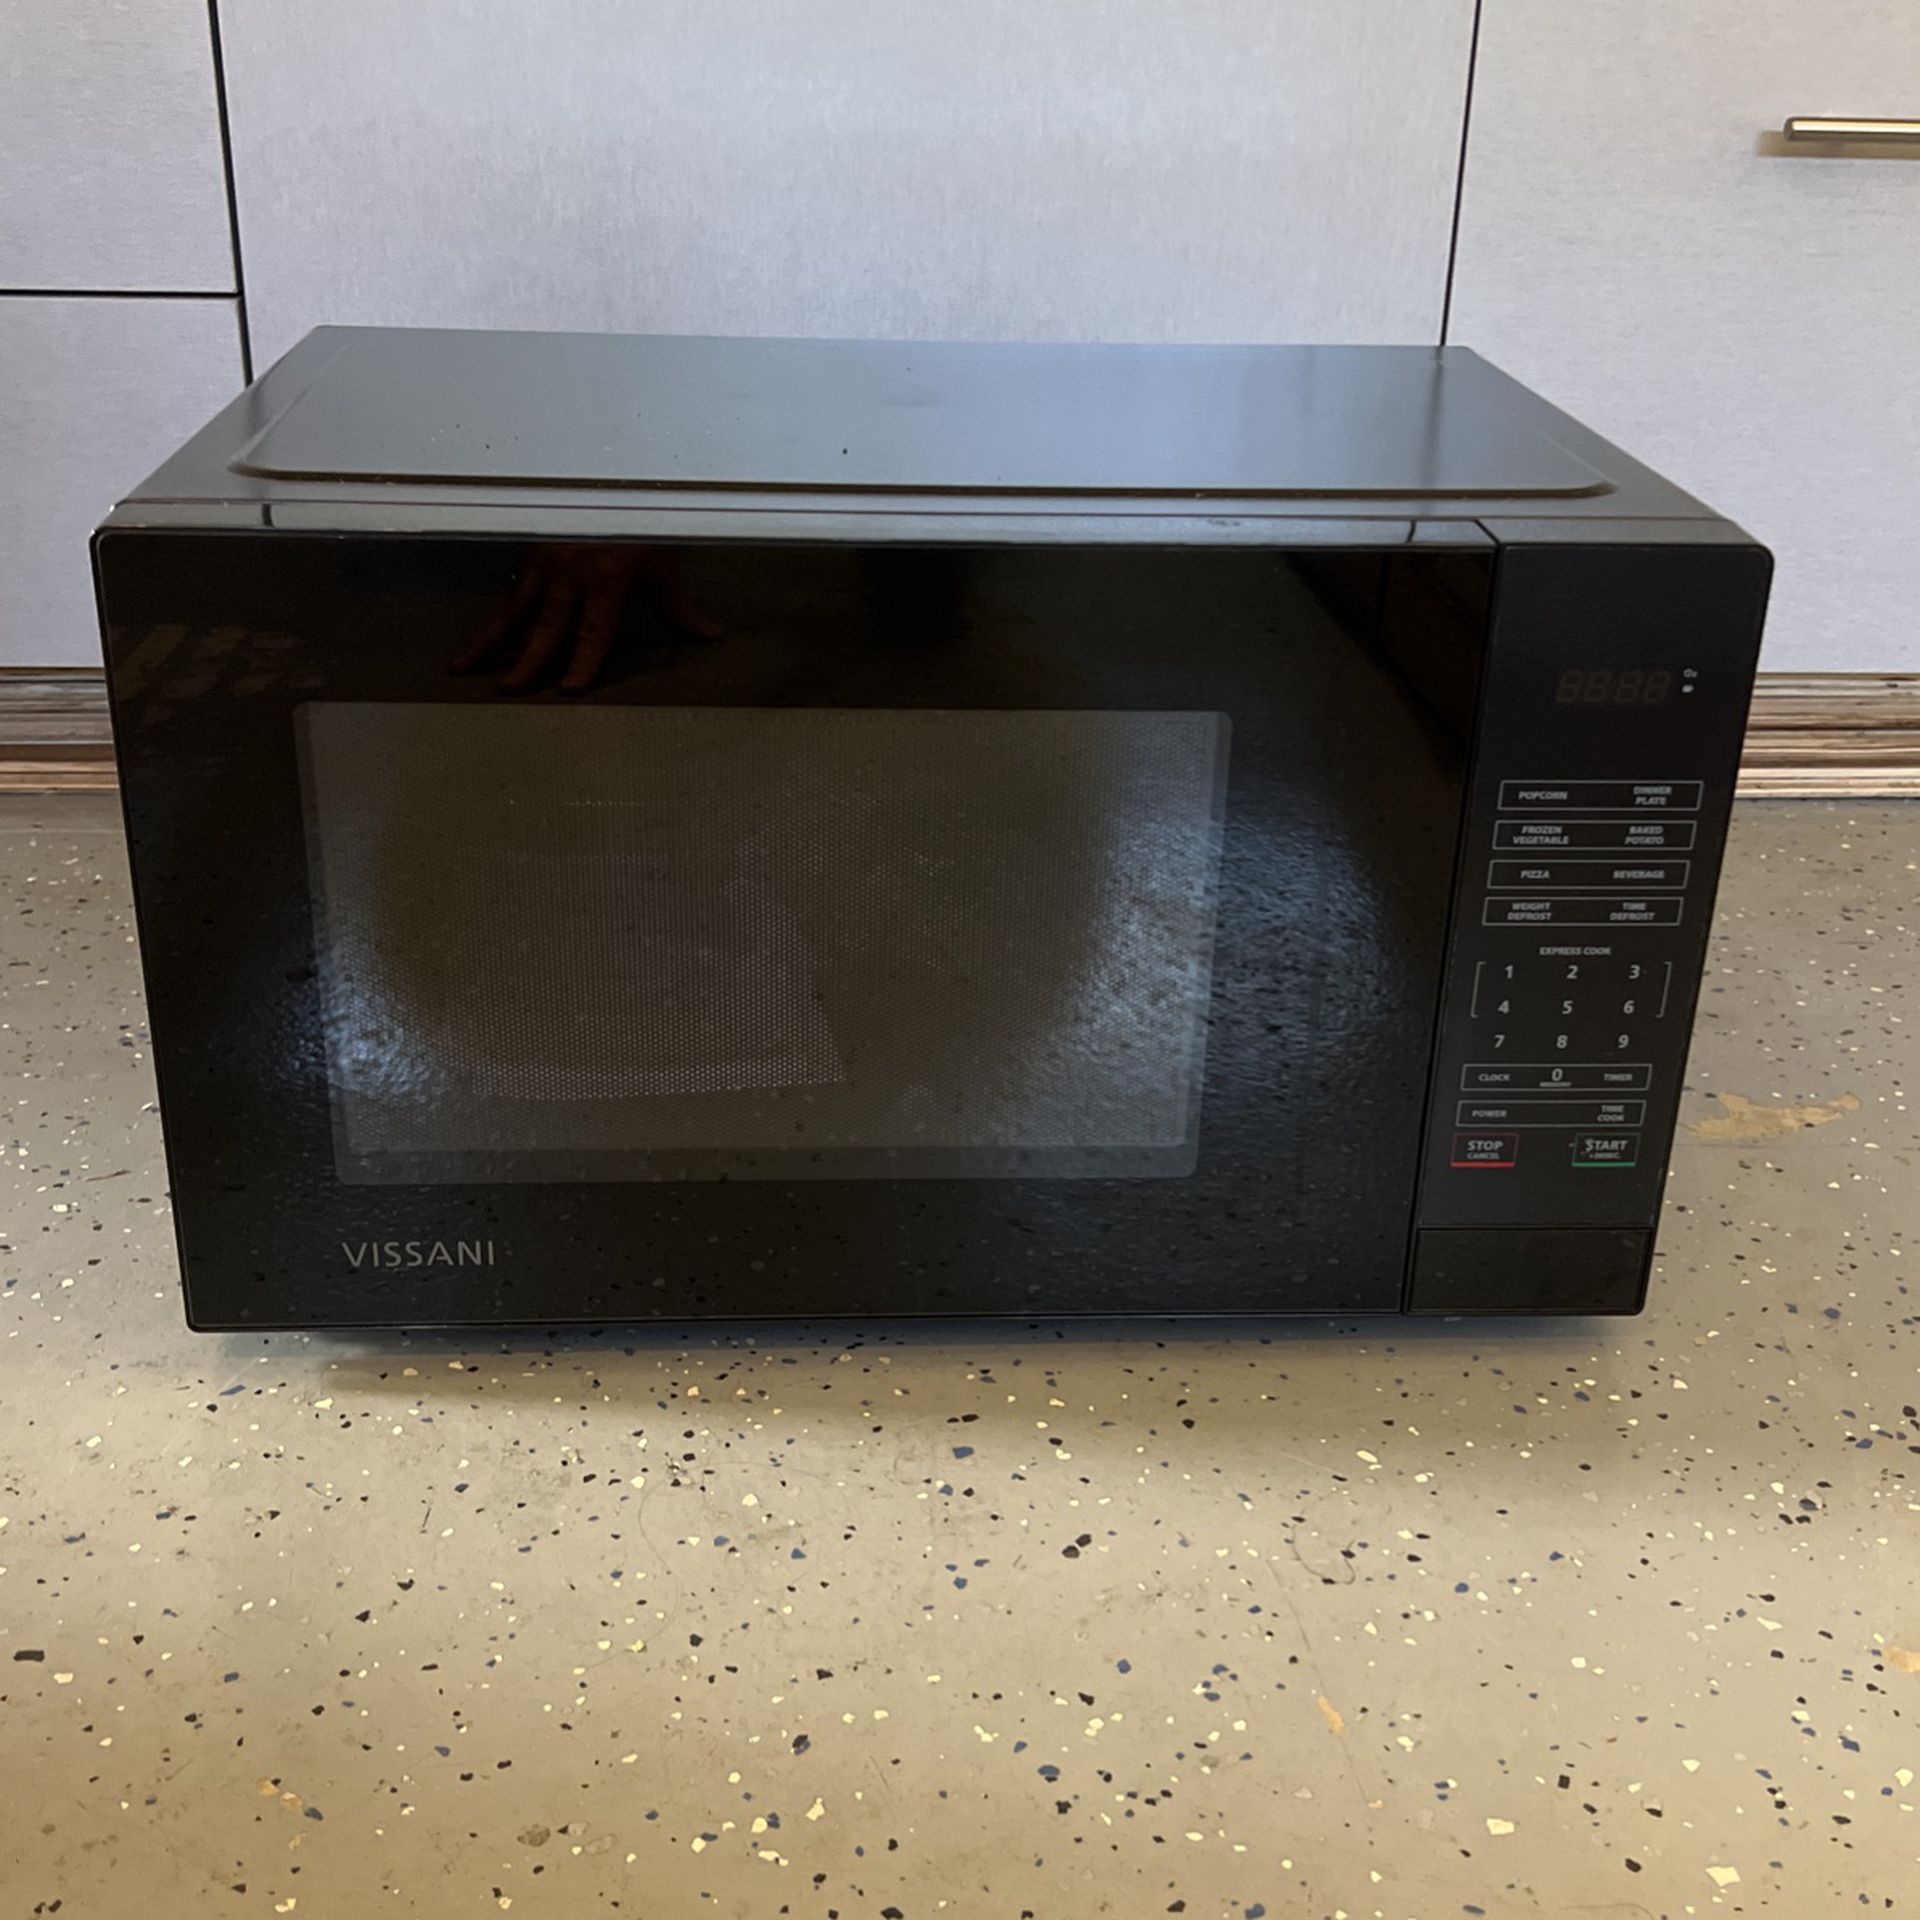 Vissani Microwave